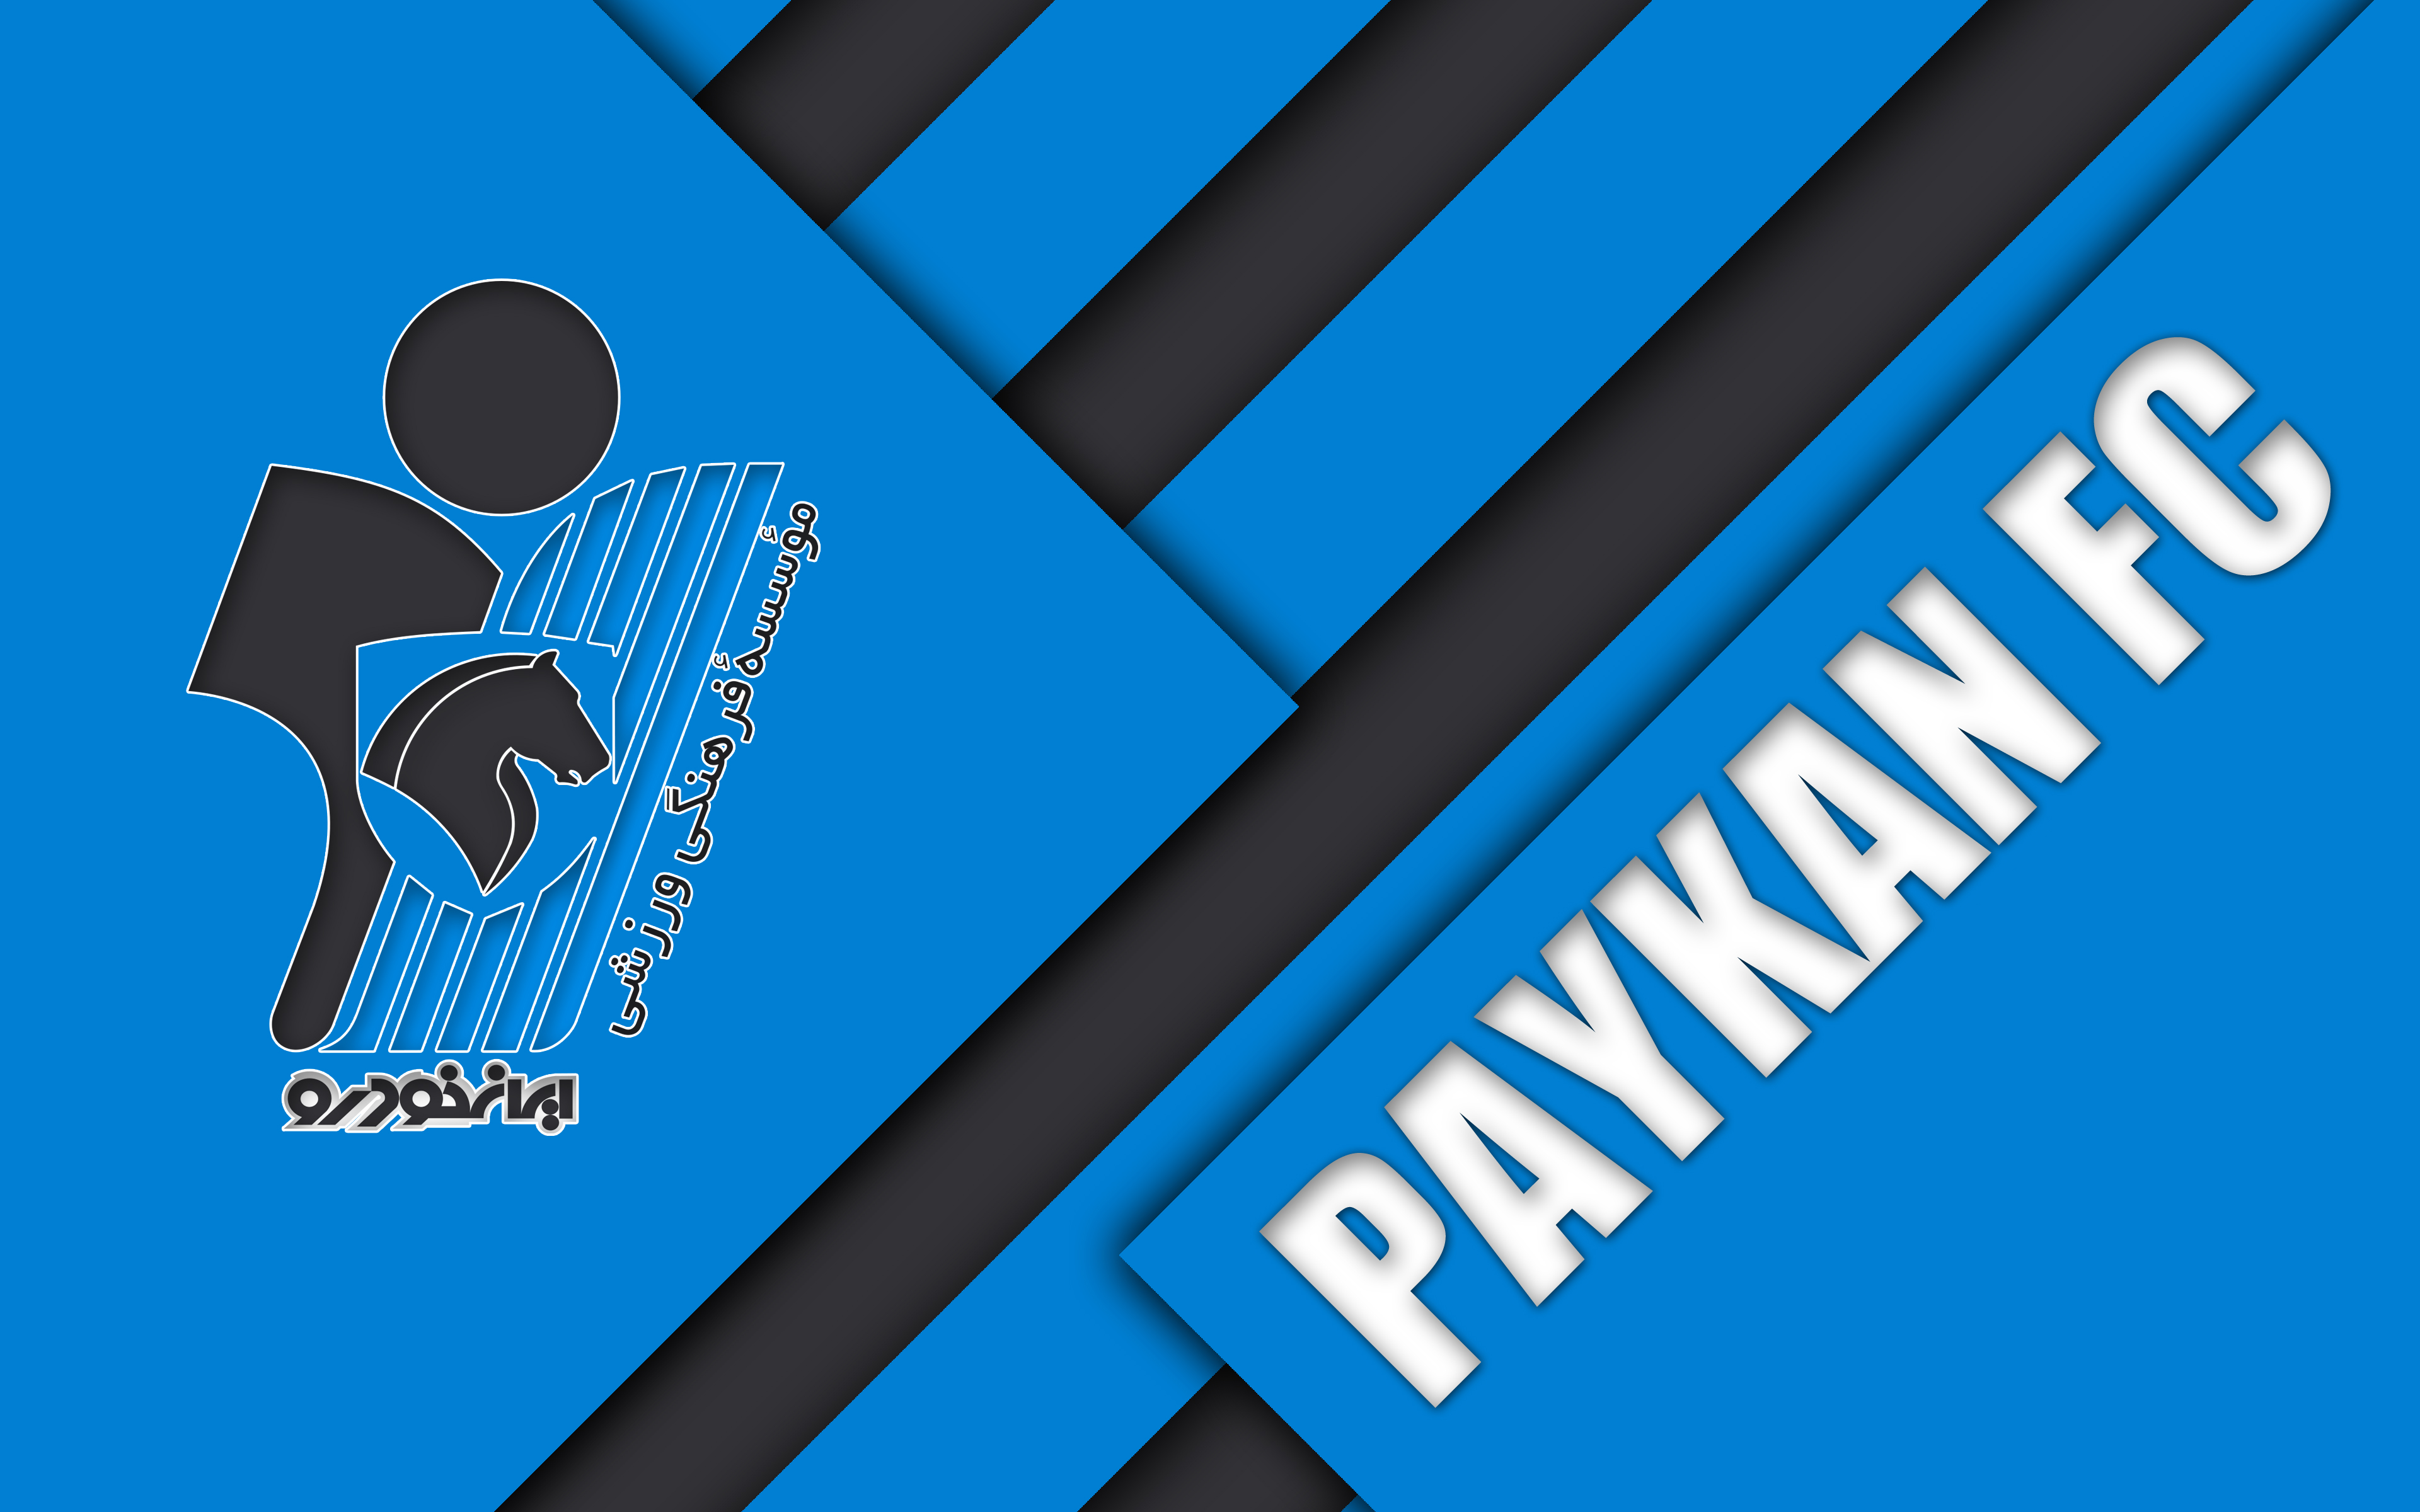 Завантажити шпалери Paykan F C на телефон безкоштовно